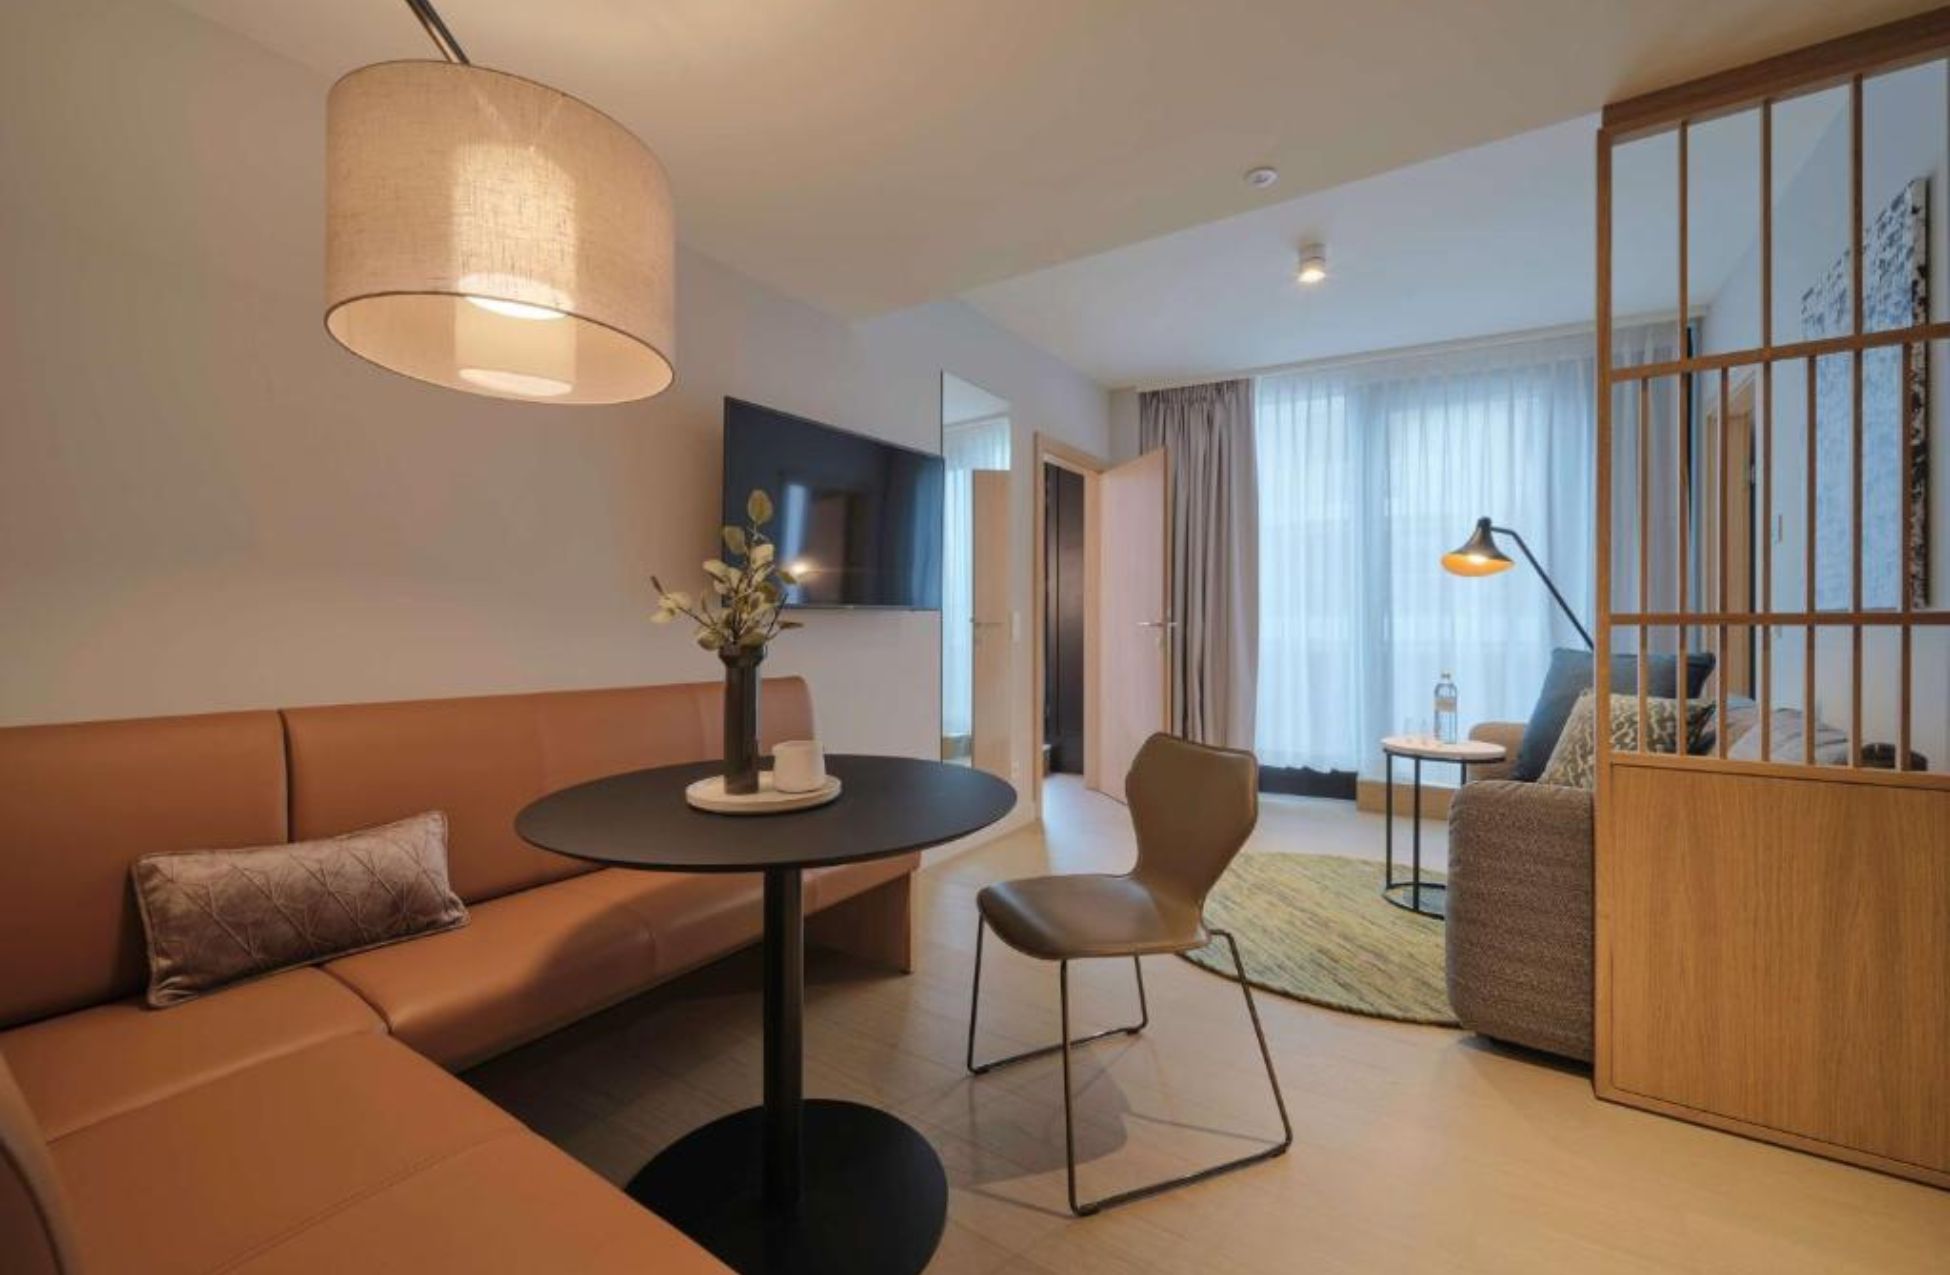 Adina Apartment Hotel Vienna Belvedere - Best Hotels In Vienna